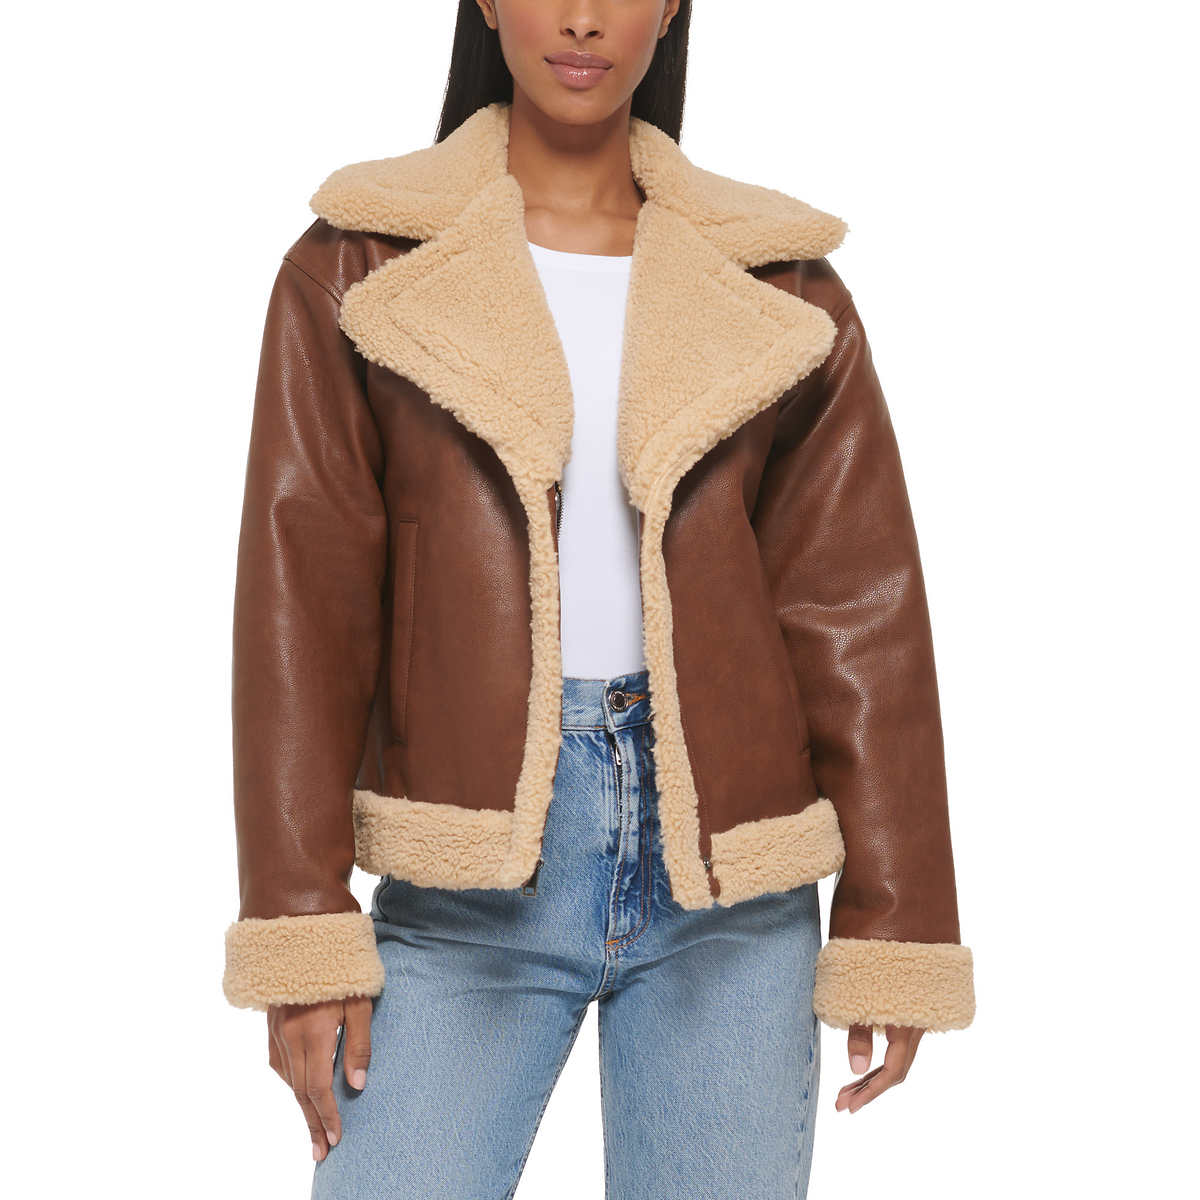 Levi's Jackets & Coats | Levi Faux Leather Jacket | Color: Black | Size: XL | Carcov's Closet